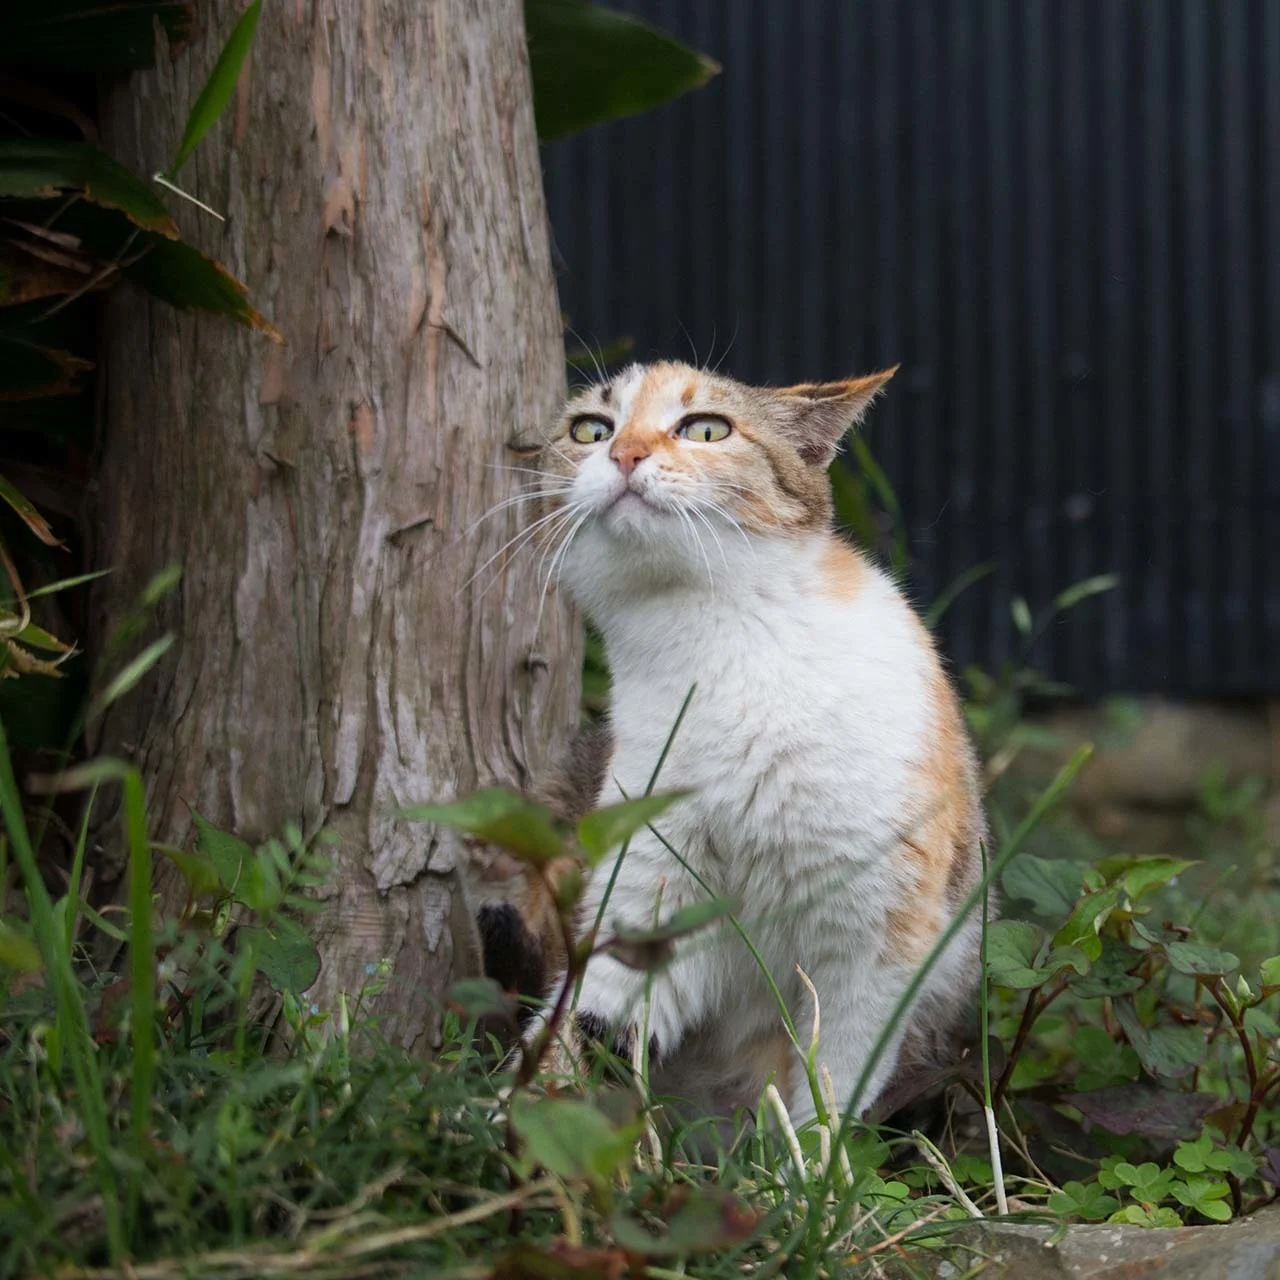 猫写真家 沖昌之の猫写真